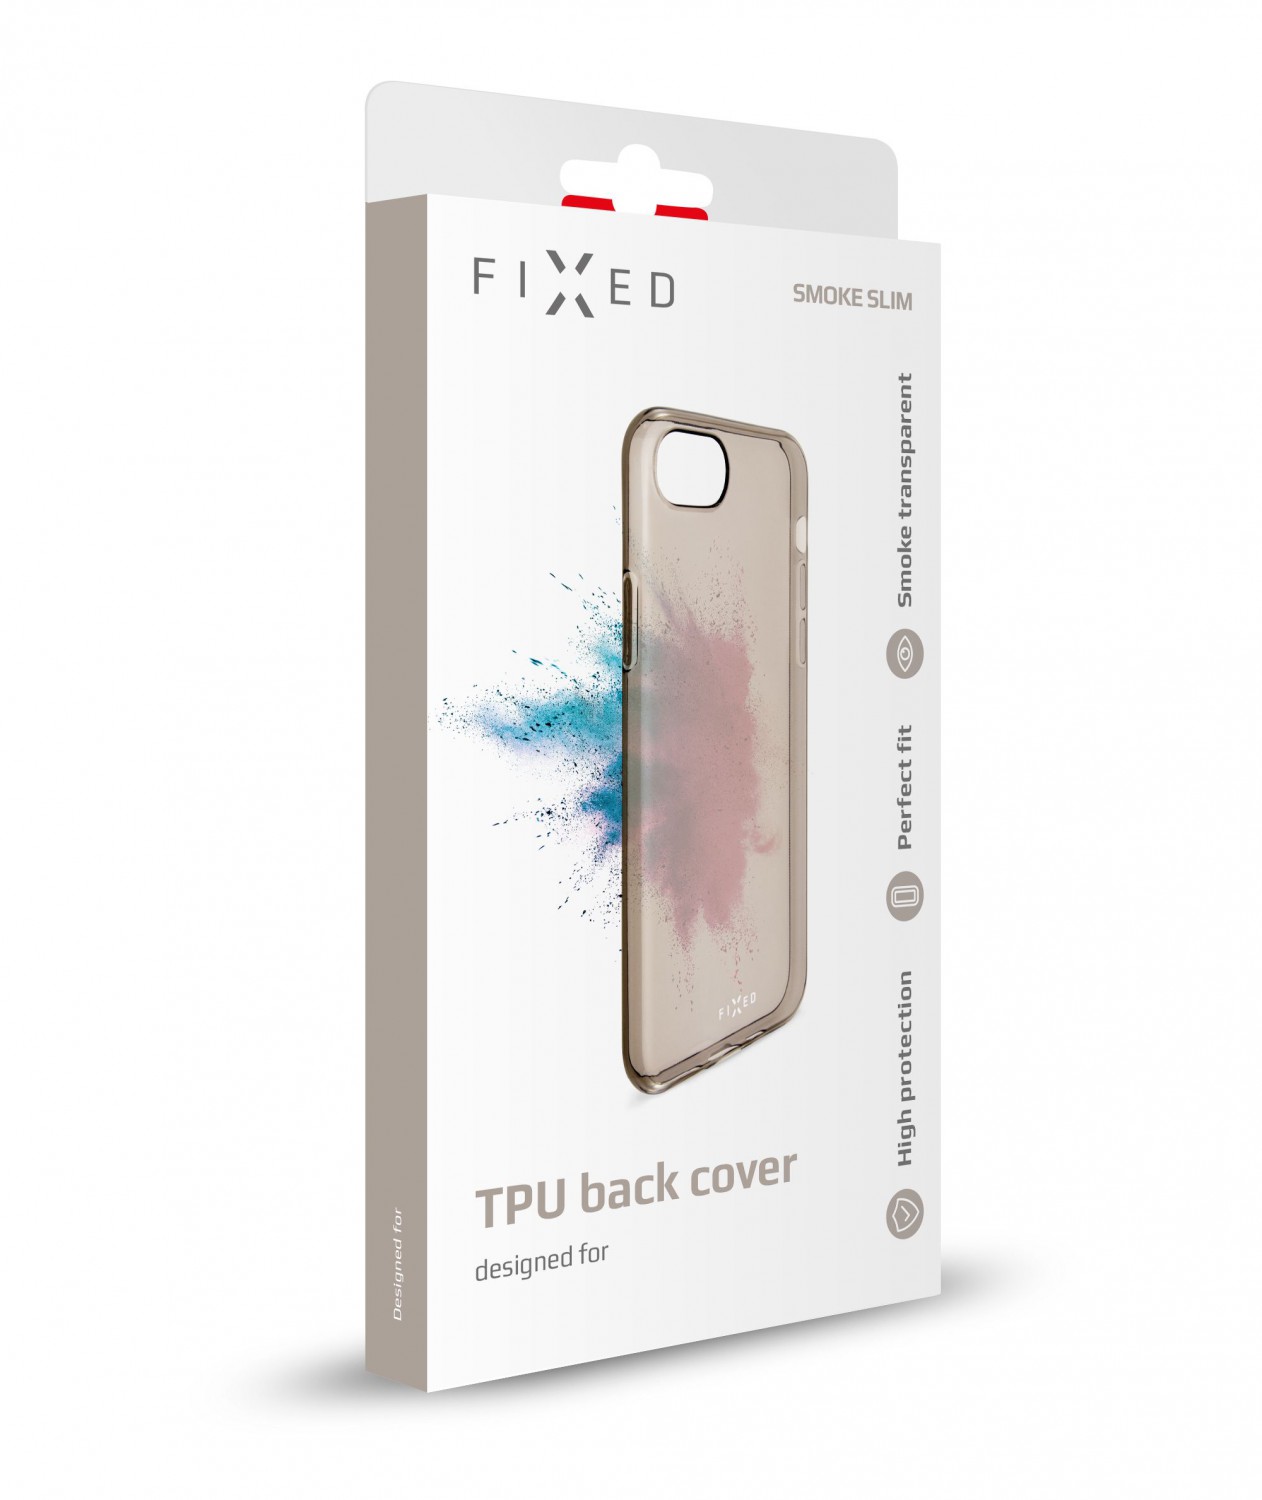 Silikonové pouzdro FIXED Slim pro Apple iPhone 7/8/SE 2020, kouřová